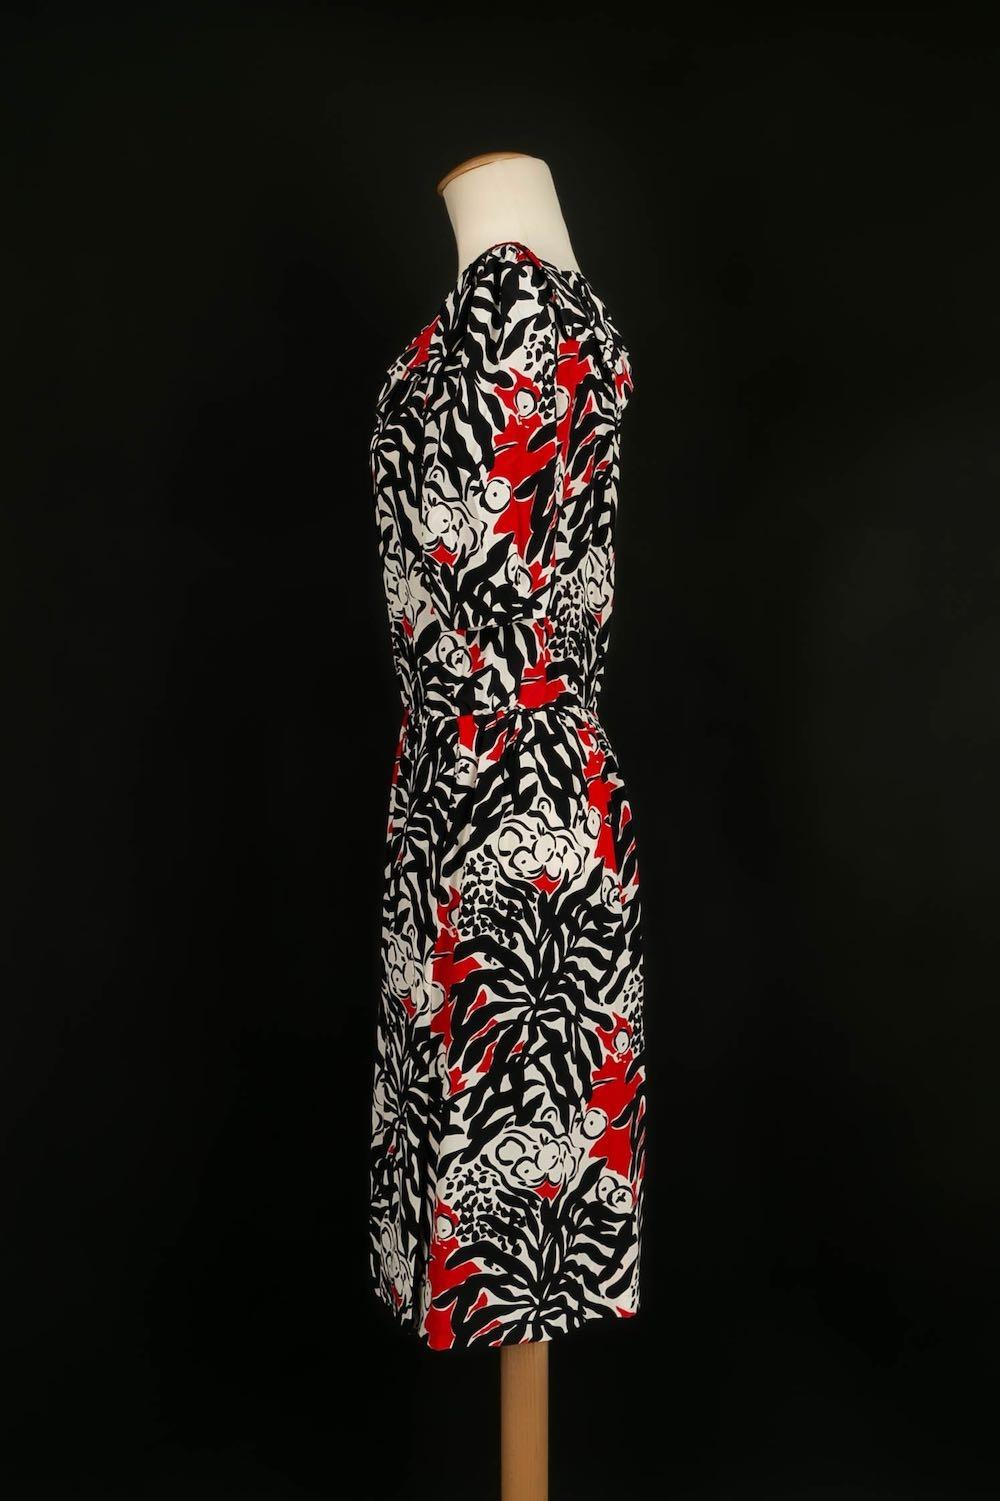 Yves Saint Laurent - (Made in France) Robe en soie noire, blanche et rouge. Taille 40FR.

Informations complémentaires :
Condit : Très bon état.
Dimensions : Largeur des épaules : 37 cm - Poitrine : 52 cm - Taille : 35 cm - Longueur des manches : 35